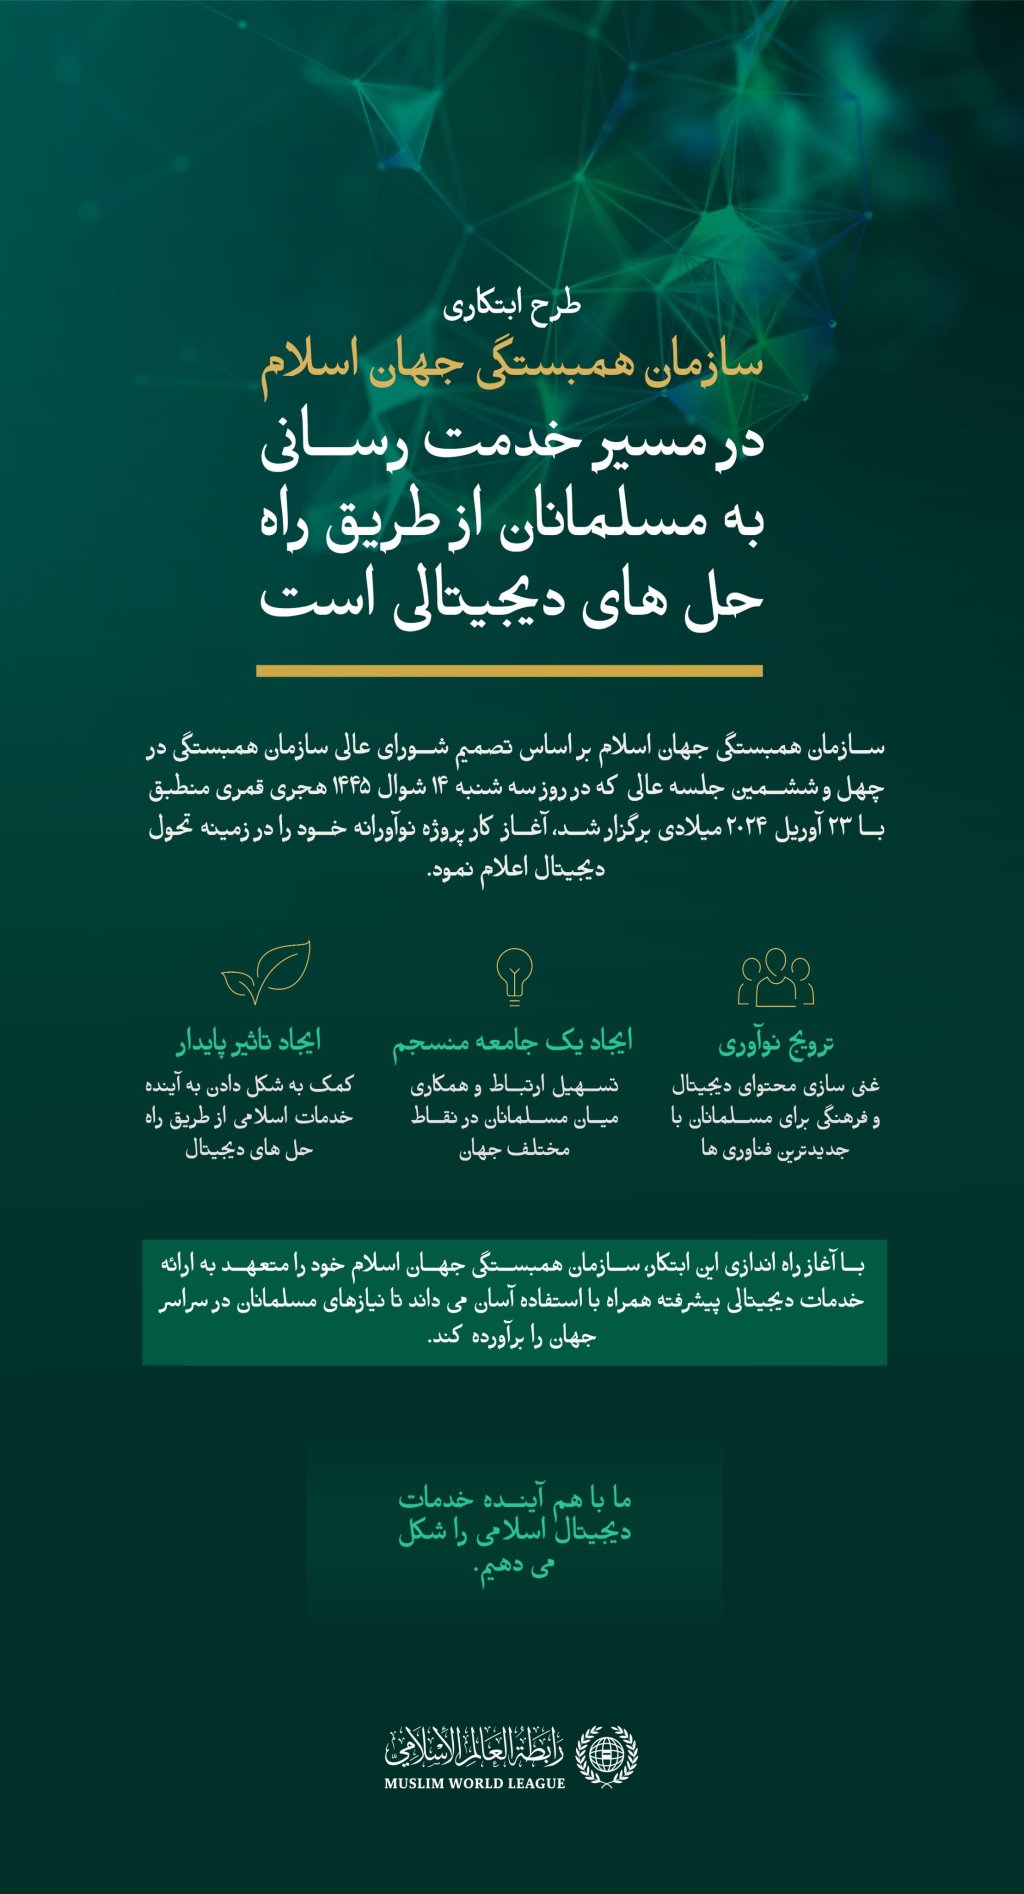 سازمان همبستگی جهان اسلام پروژه منحصر به فرد تحول دیجیتال خود را در راستای خدمت رسانی به مسلمانان سراسر جهان راه اندازی می کند که یک محیط دیجیتال اسلامی و تعاملی قابل اعتماد و ارزشمند را فراهم می کند و ارتباطات و تبادل میان مسلمانان را افزایش می دهد